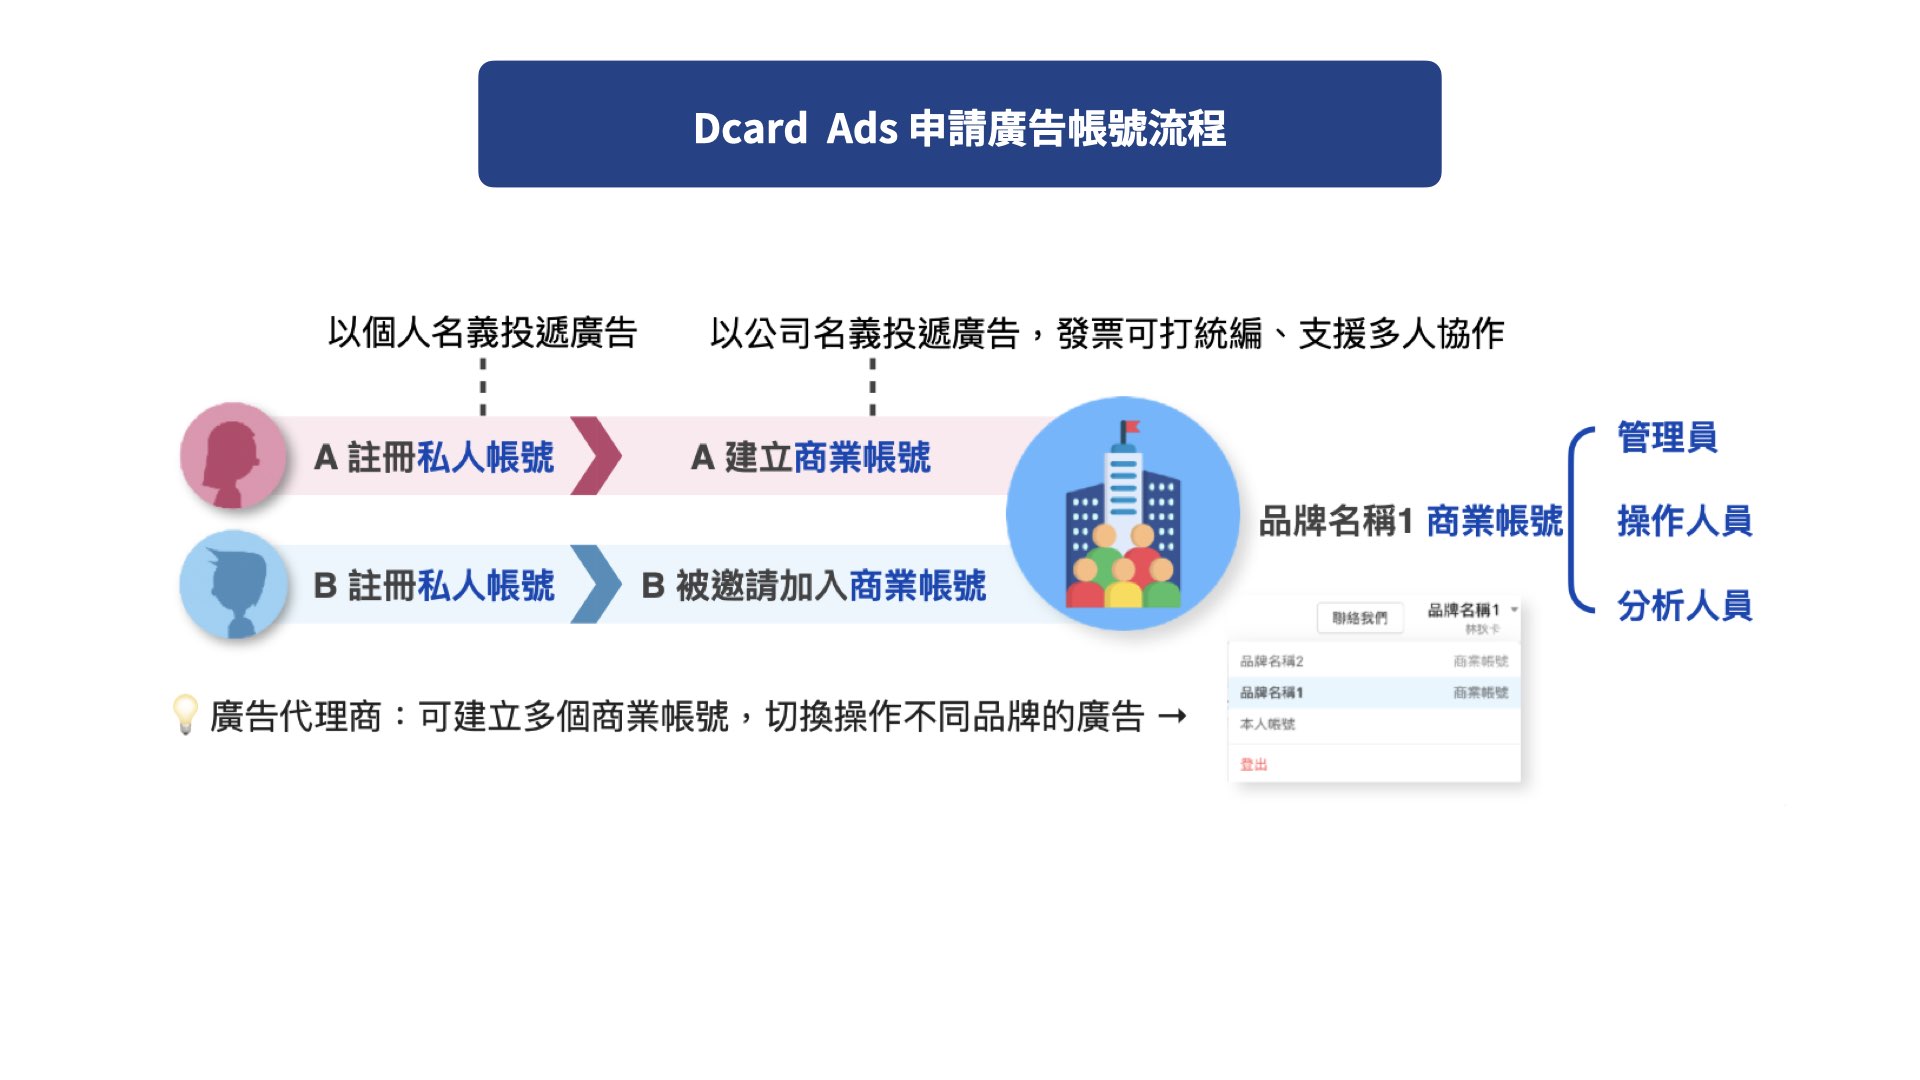 Dcard Ads 申請廣告帳號流程